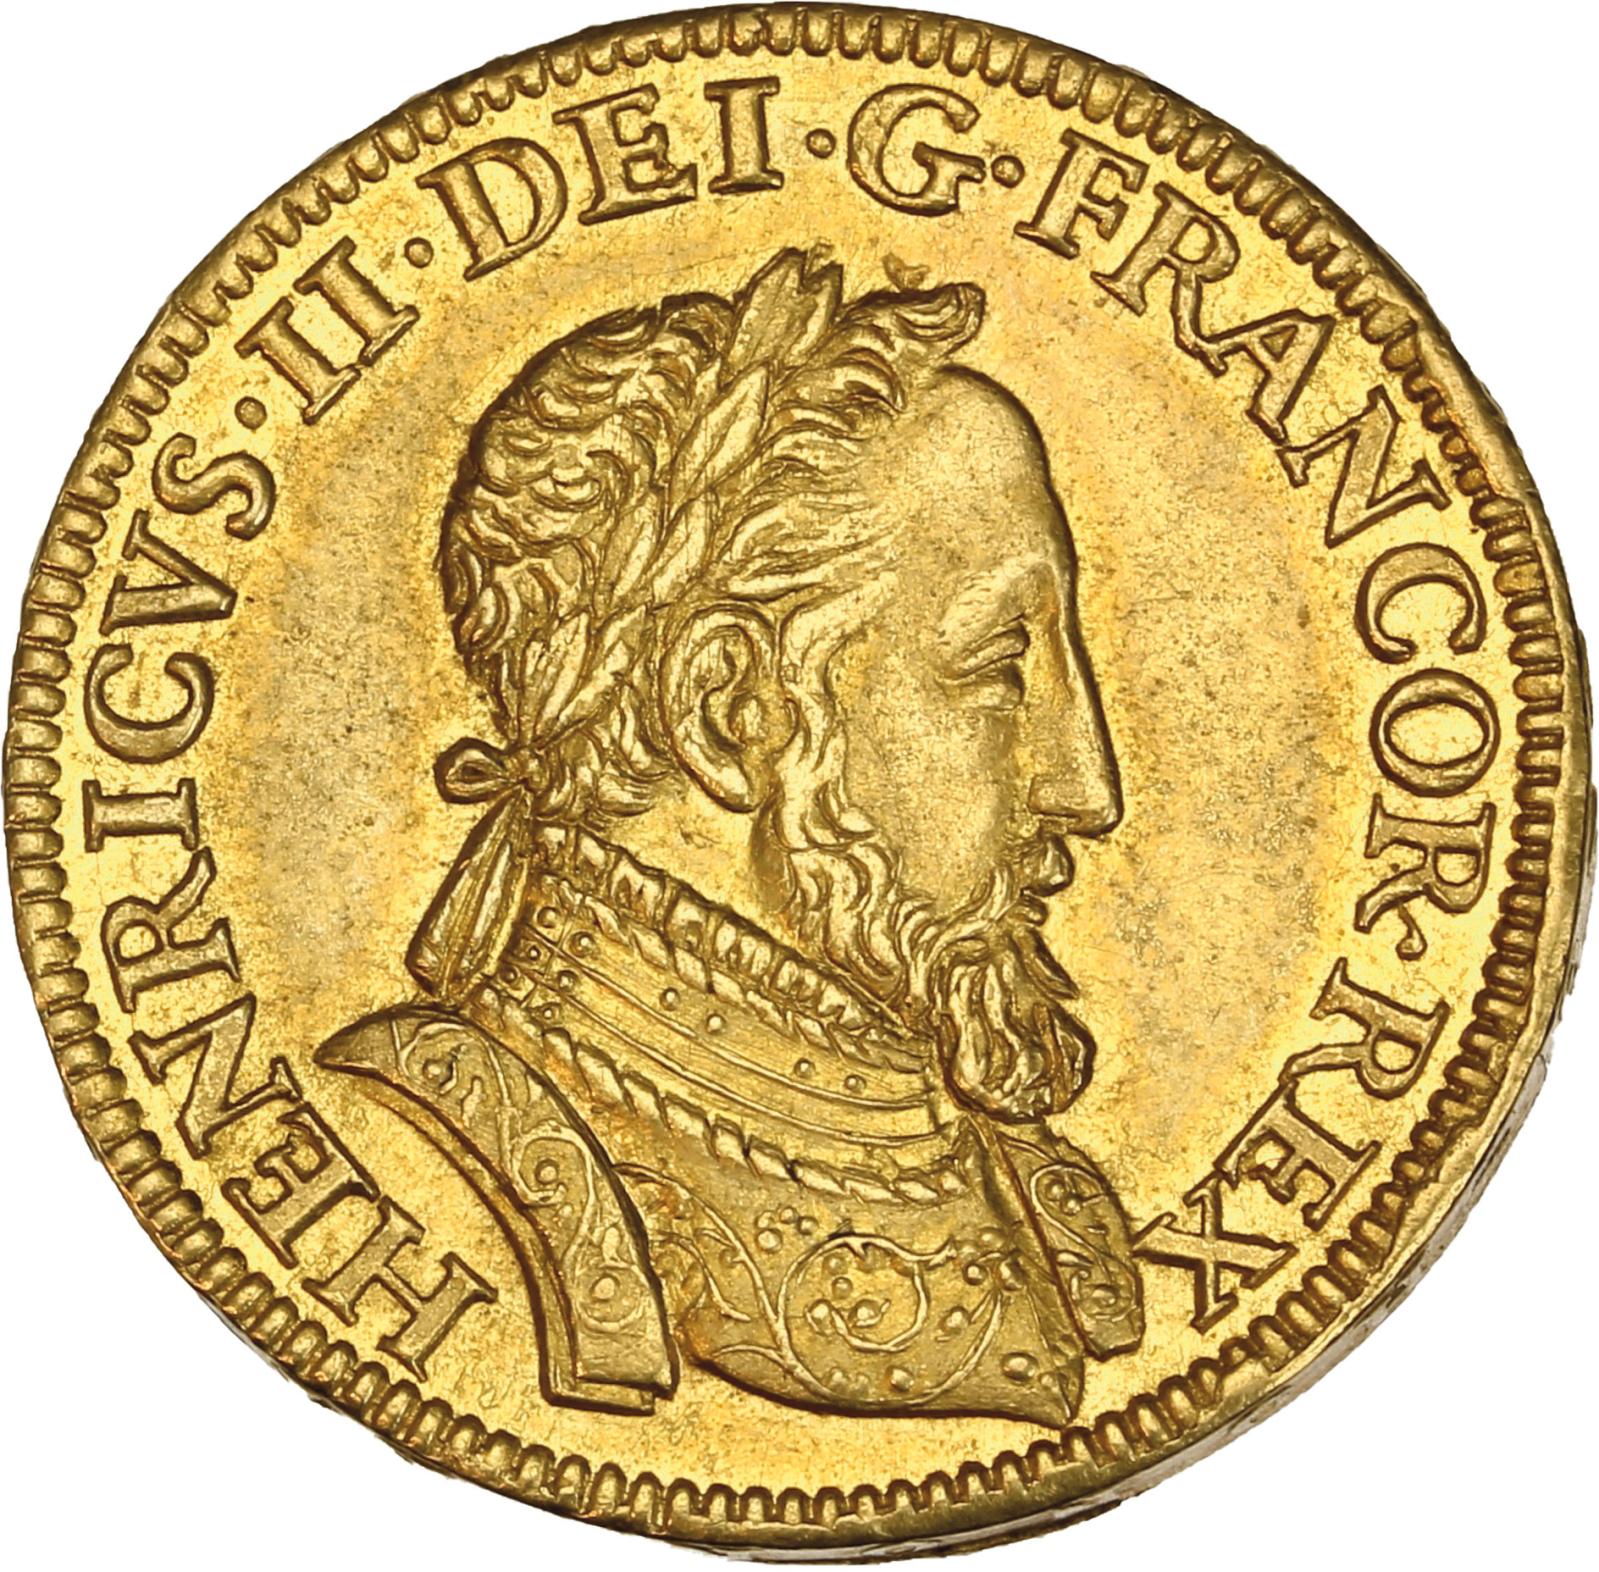 Monnaies royales de France et de Navarre 